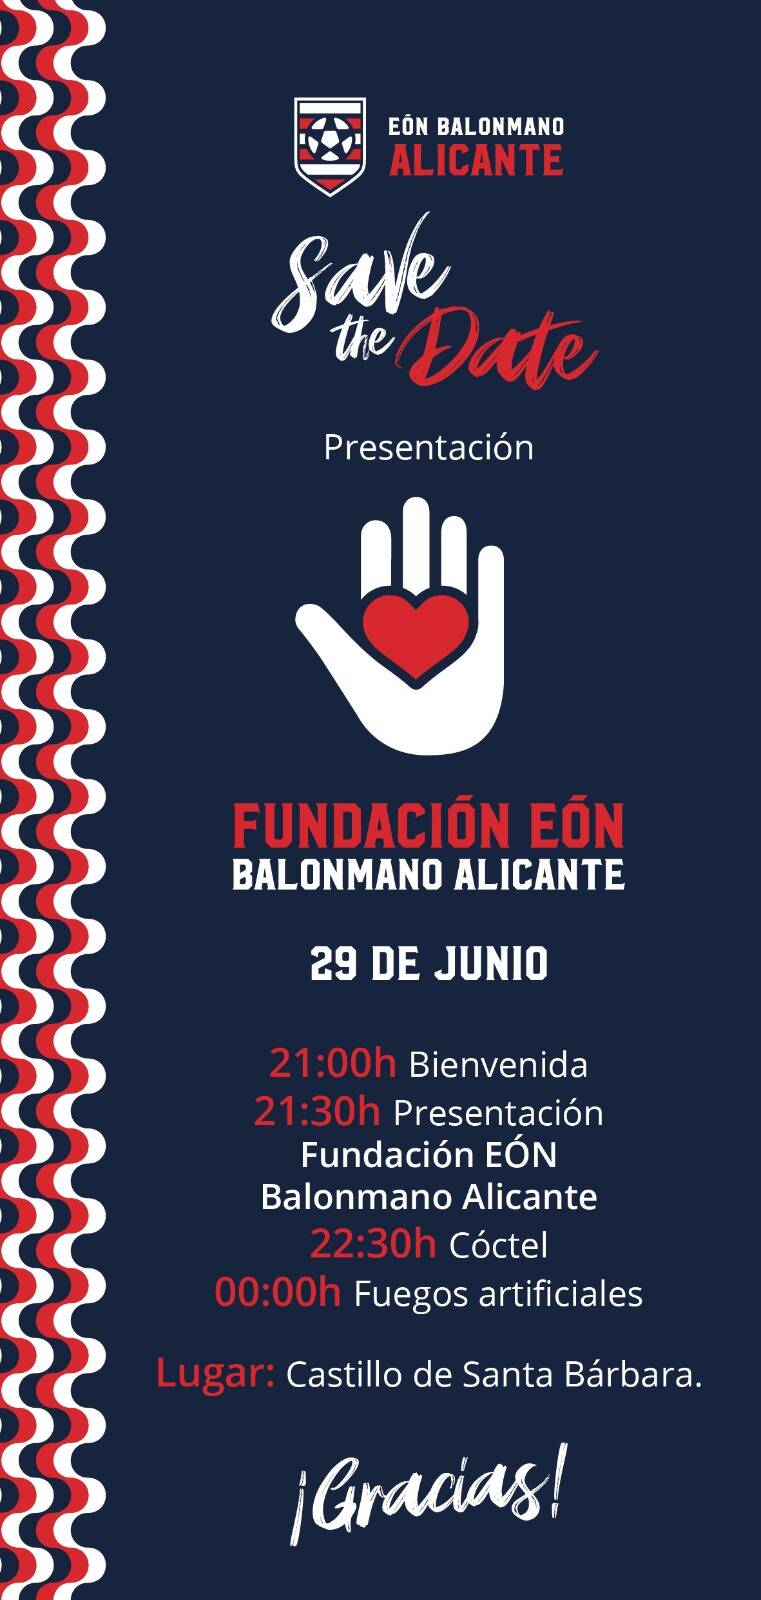 El Balonmano Eón Alicante presenta este jueves su fundación